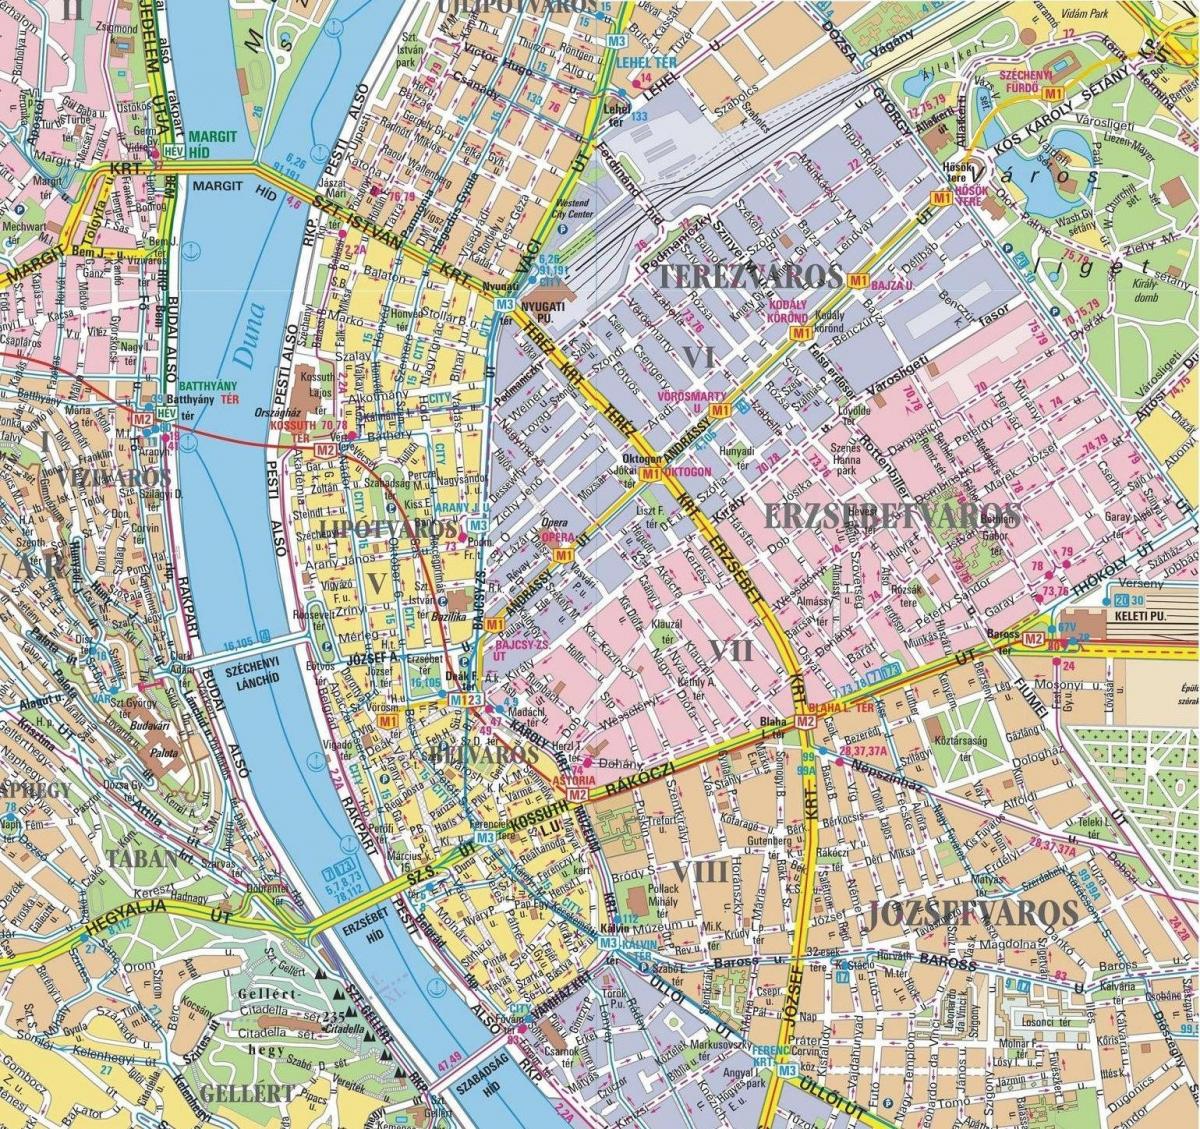 kort over bydele i budapest